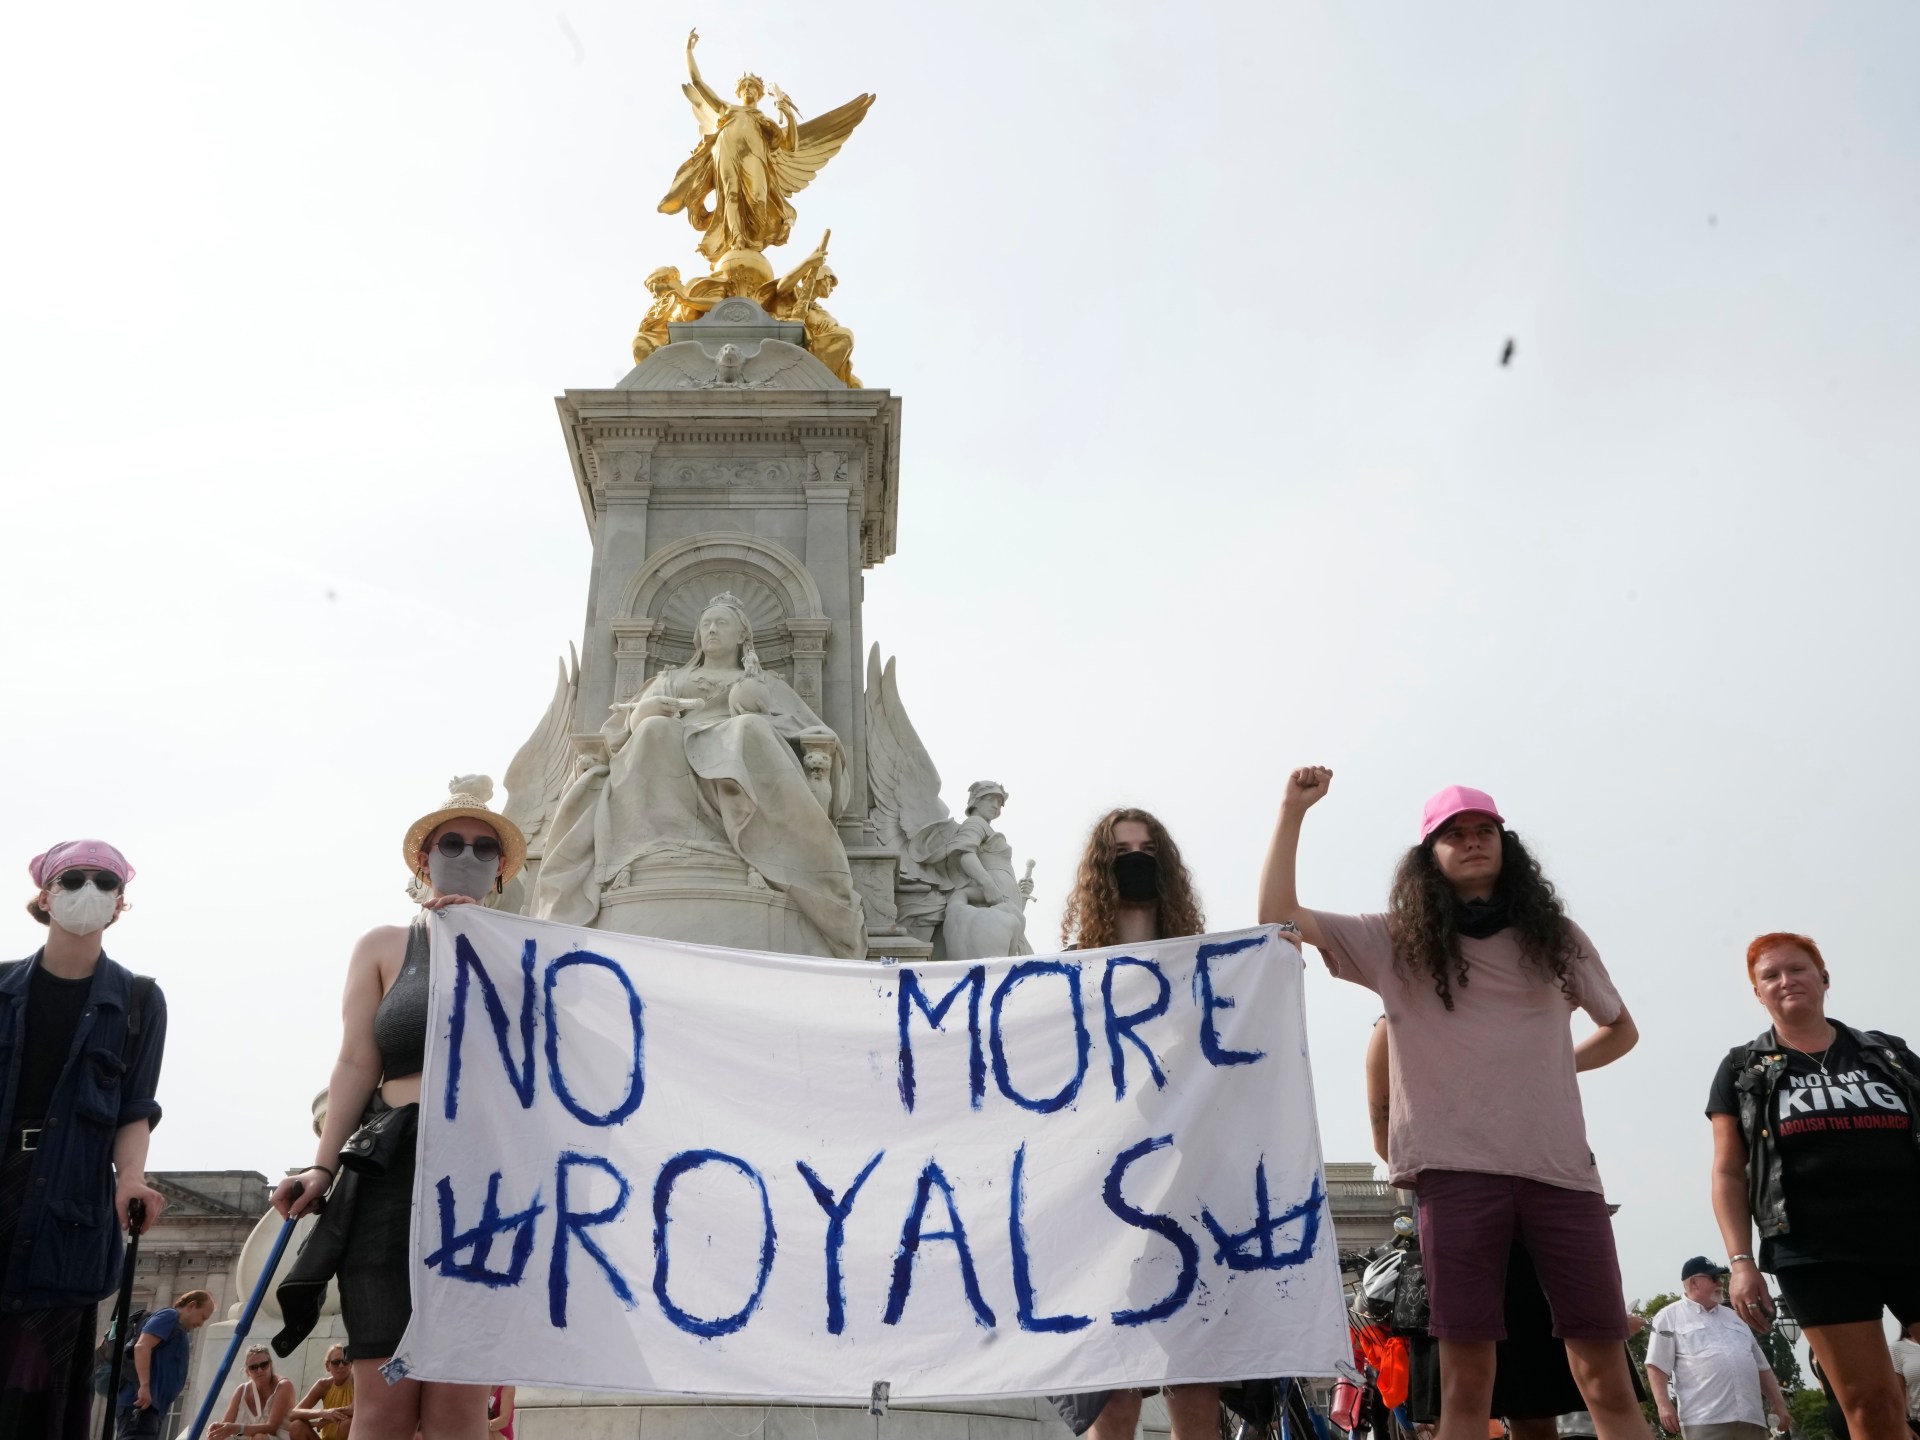 Britanya’nın monarşisi ölüyor ve hiçbir halkla ilişkiler onu kurtaramaz